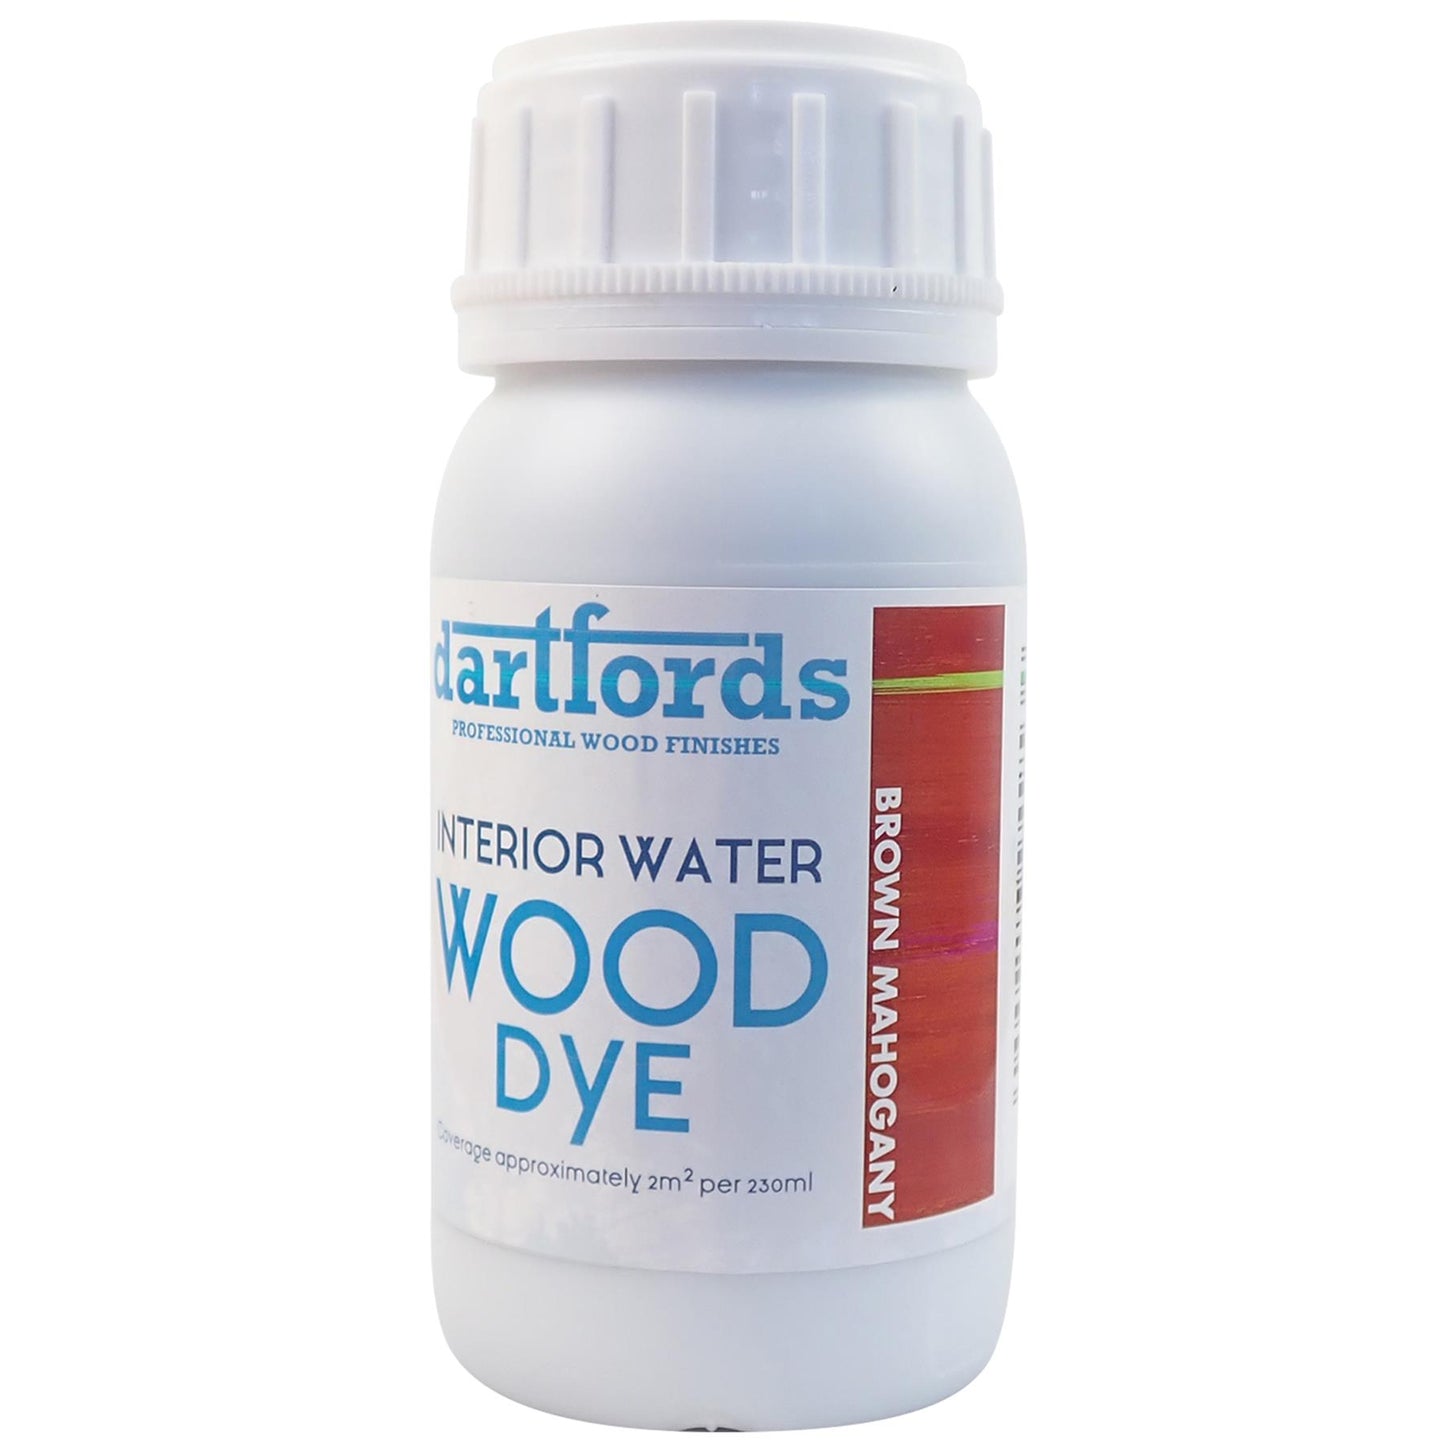 dartfords Brown Mahogany Interior Water Based Wood Dye - 230ml Tin